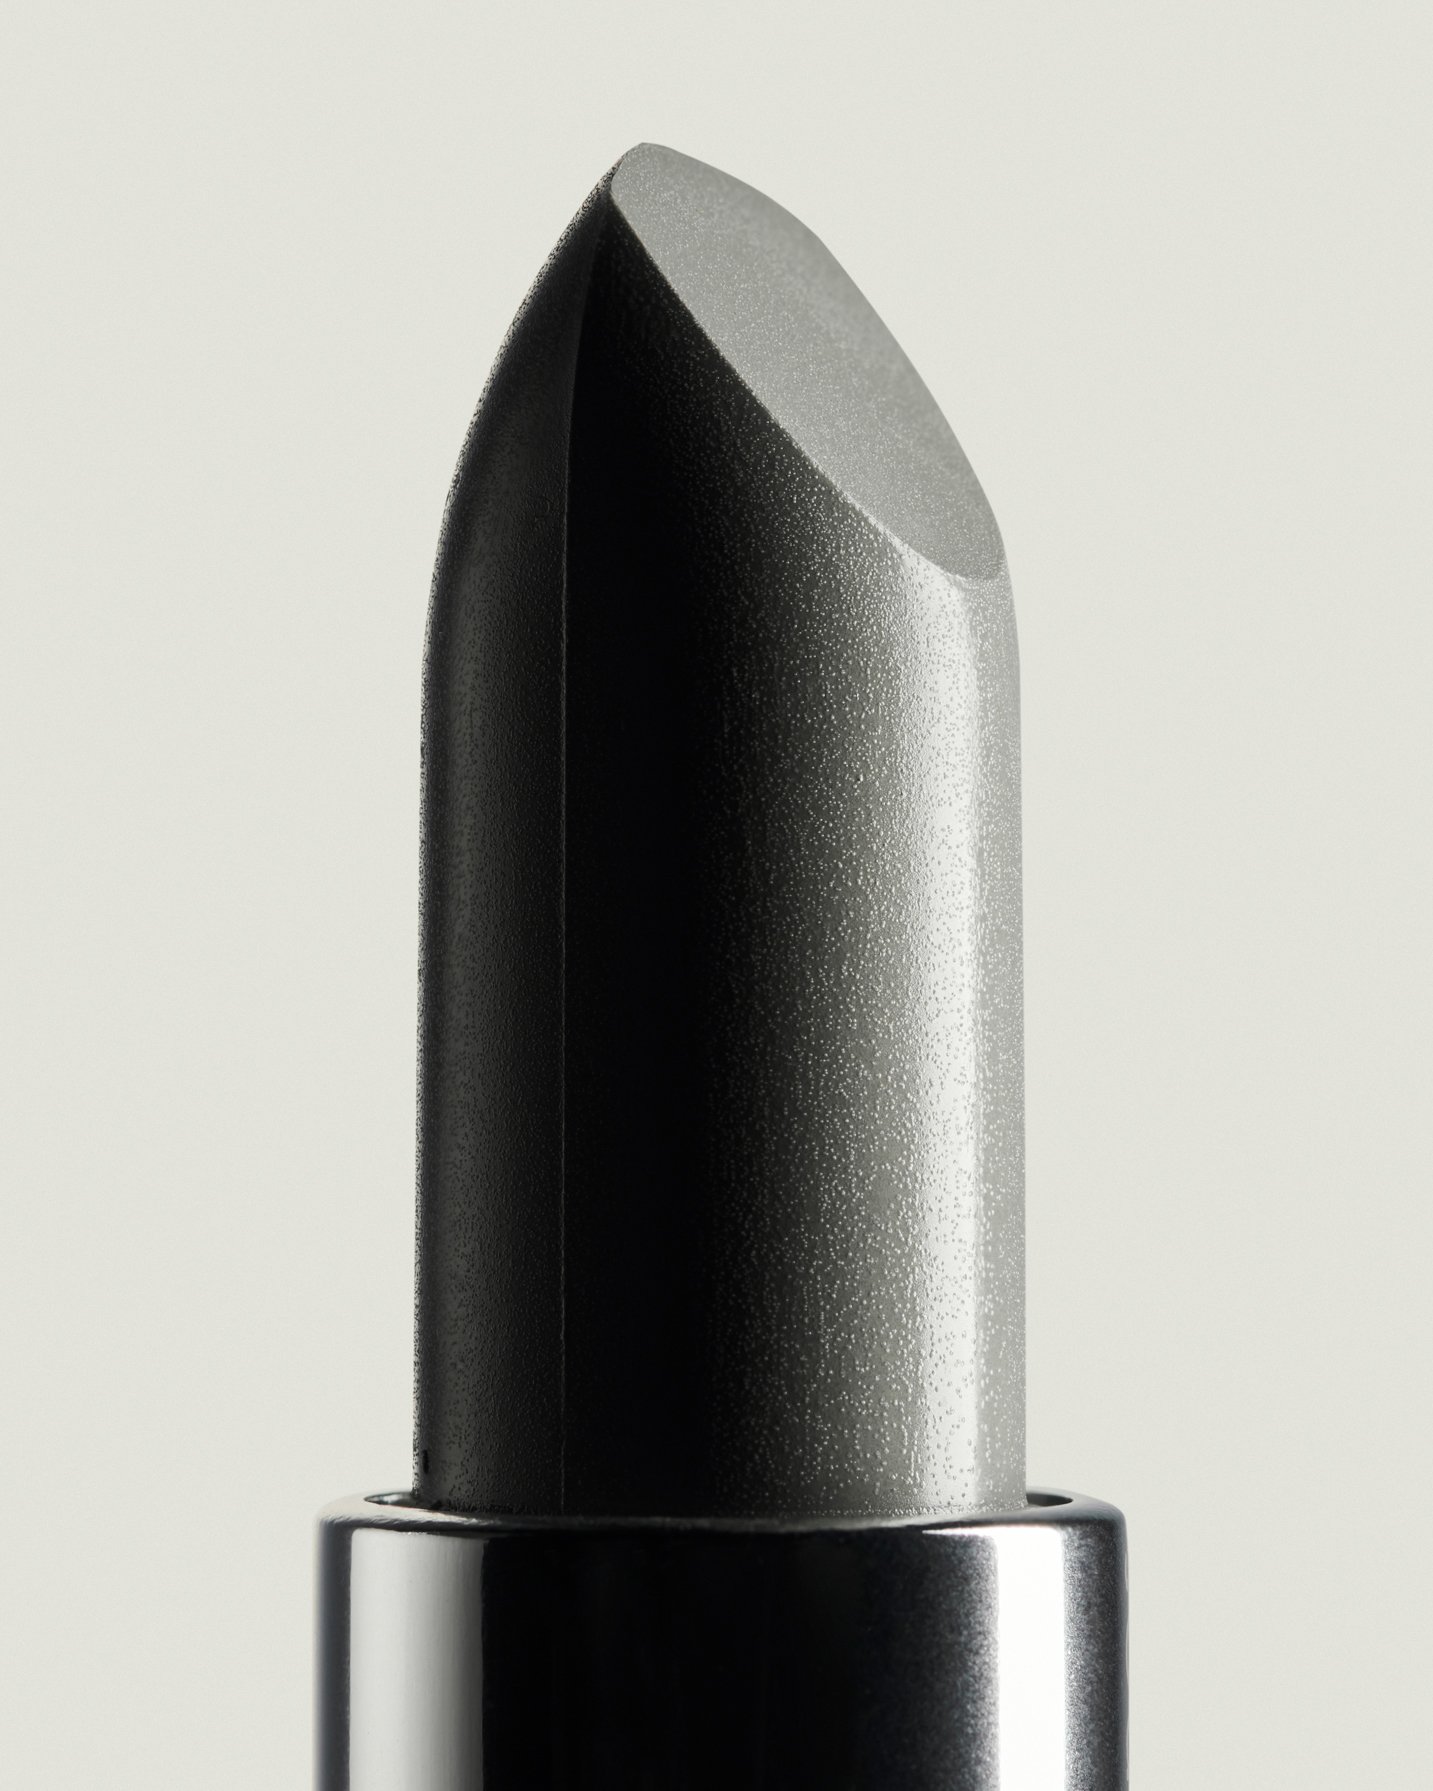  Silver lipstick for Wallpaper* Magazine 